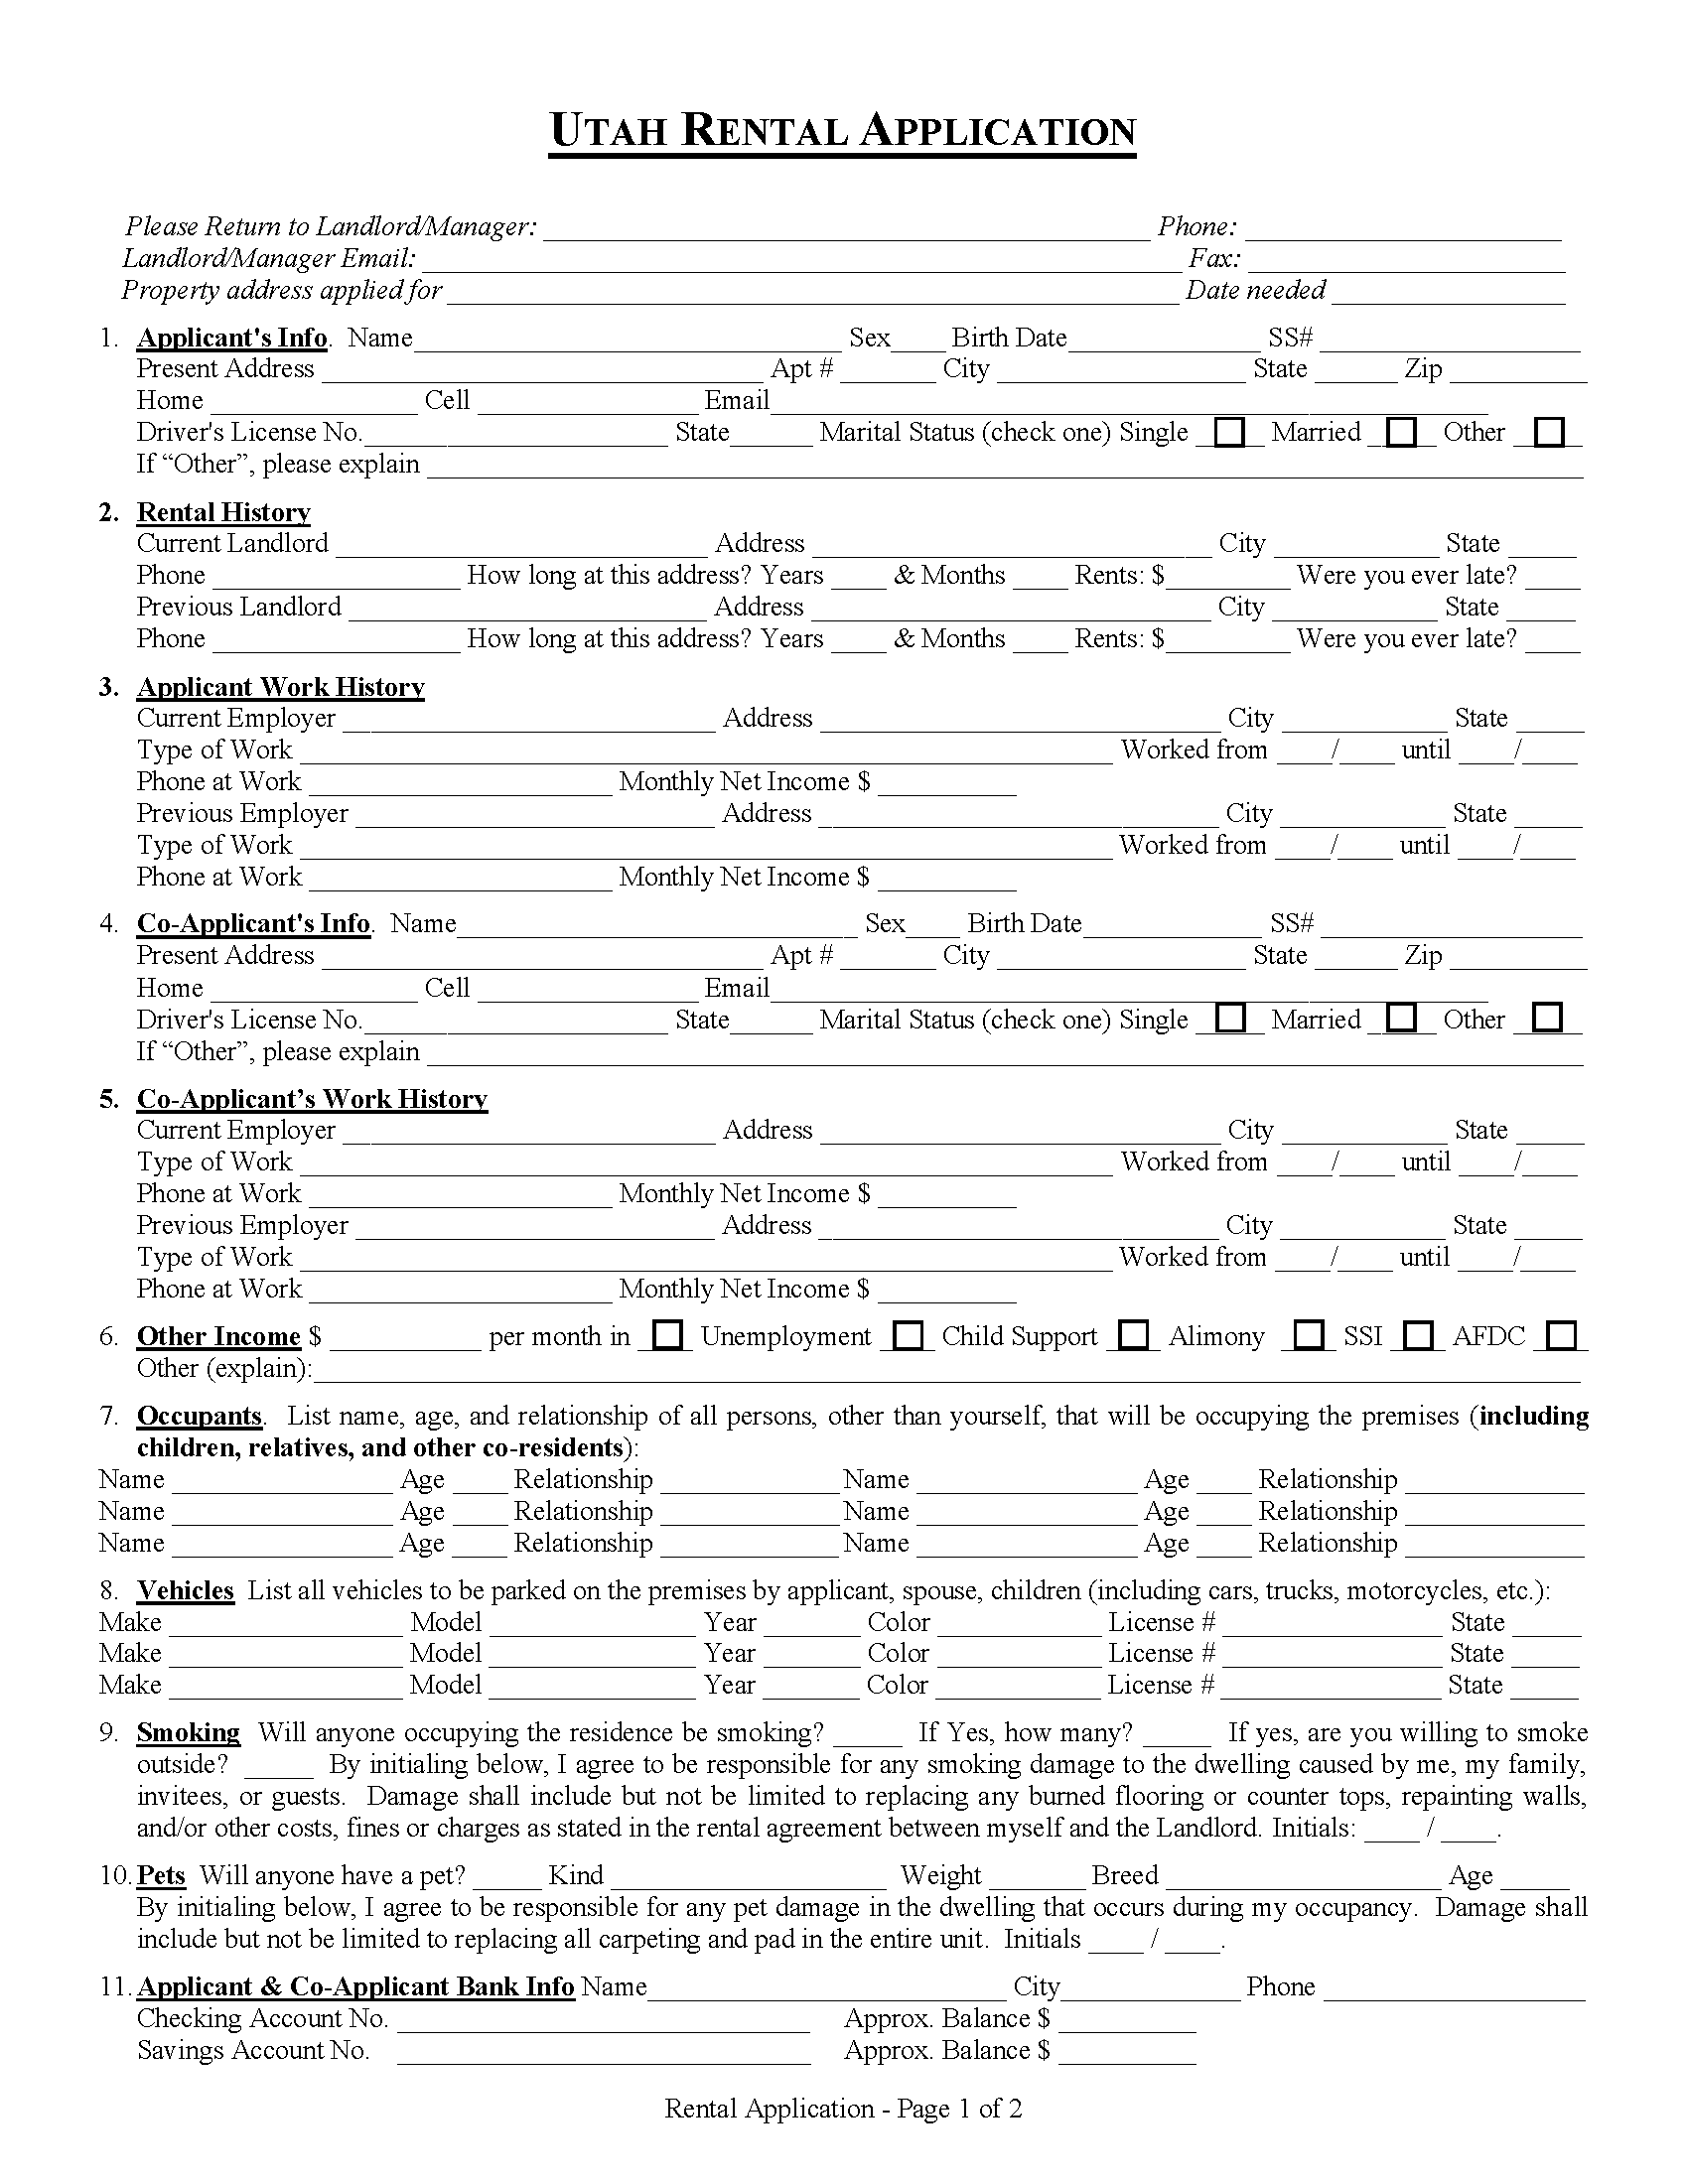 Free Utah Rental Application PDF